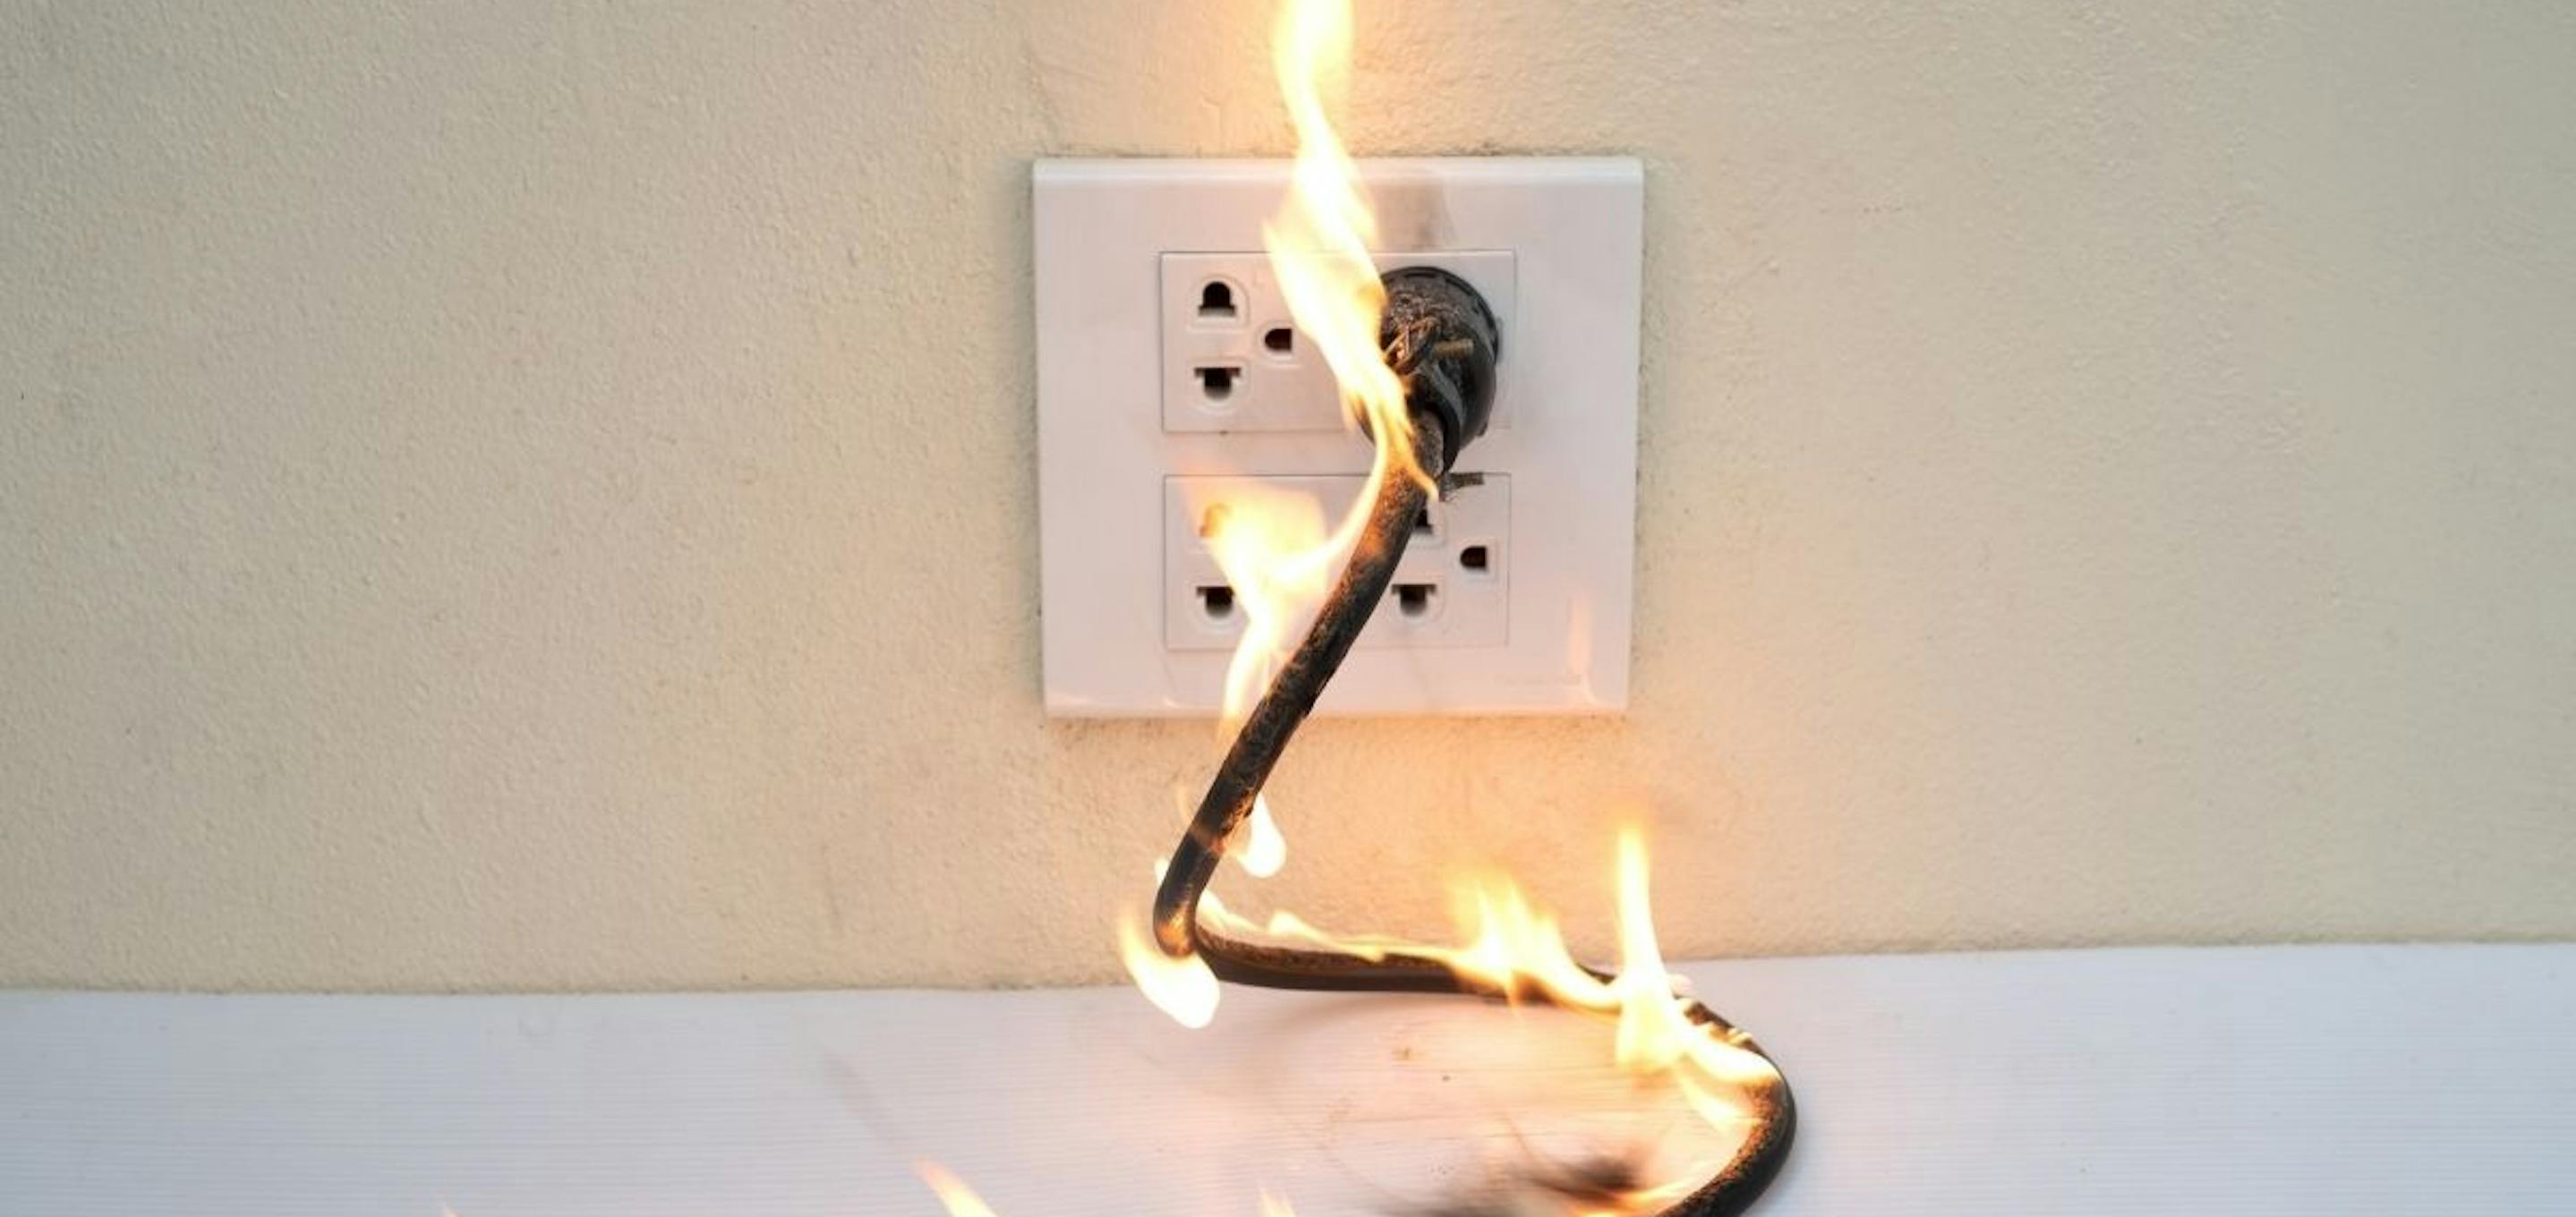 Plug socket on fire